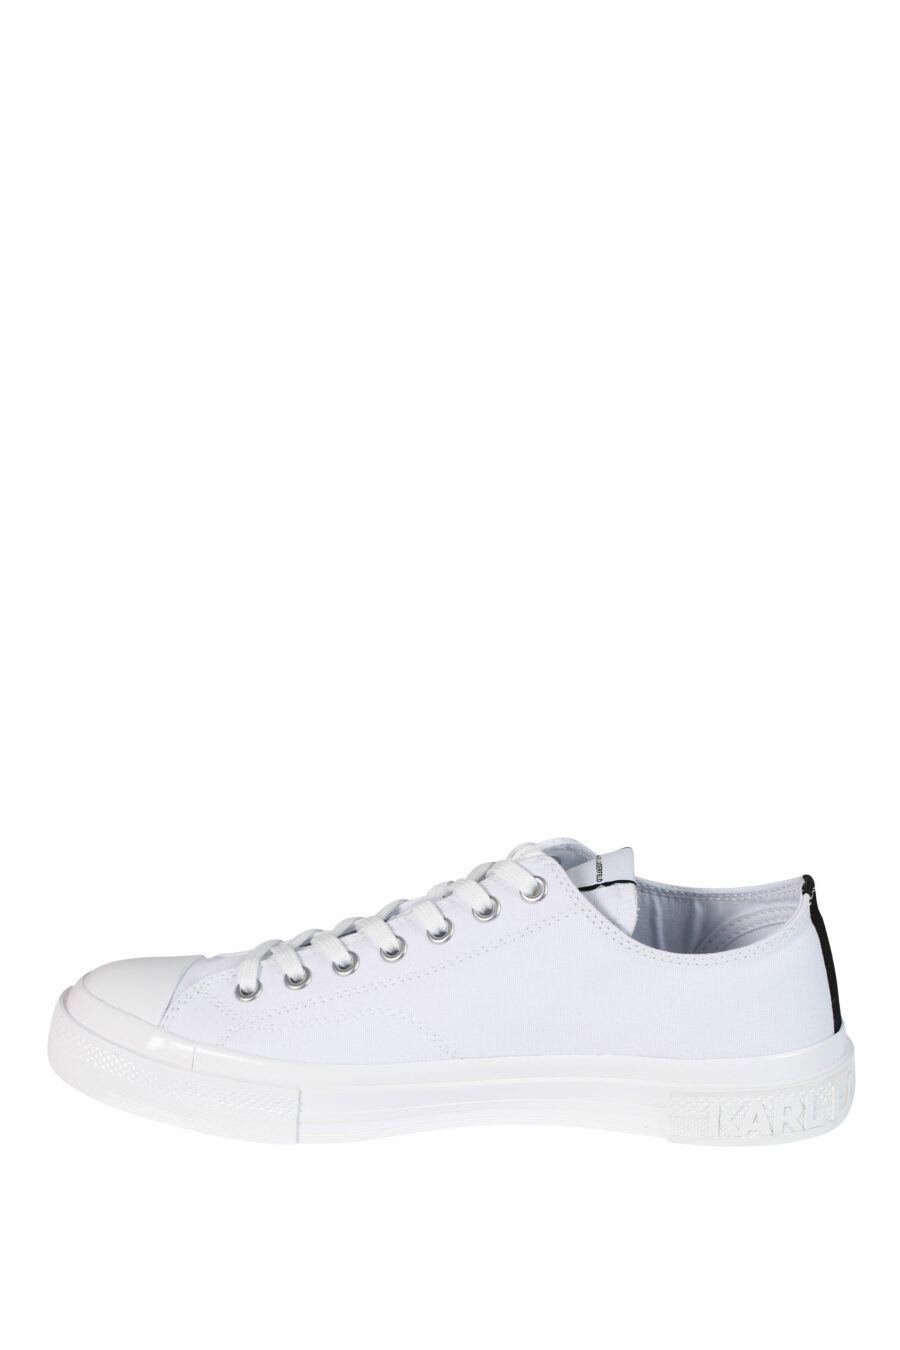 Zapatillas blancas con logo "karl" y suela blanca - 5059529249747 3